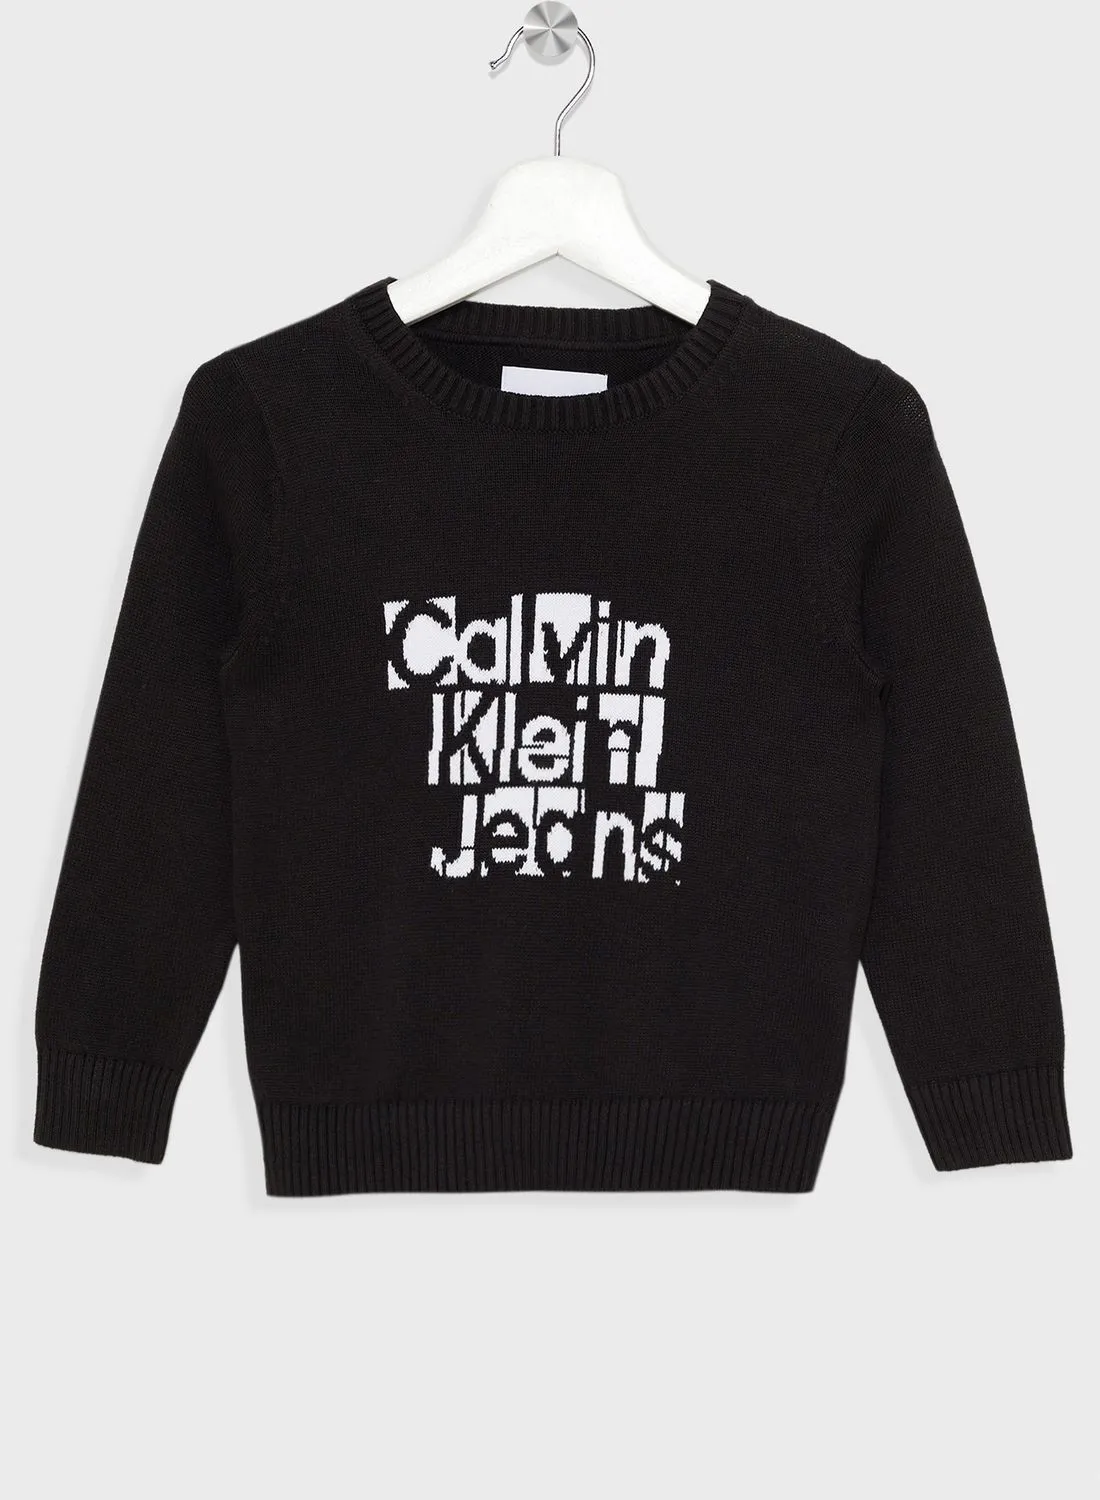 Calvin Klein Jeans Kids Graphic Sweater